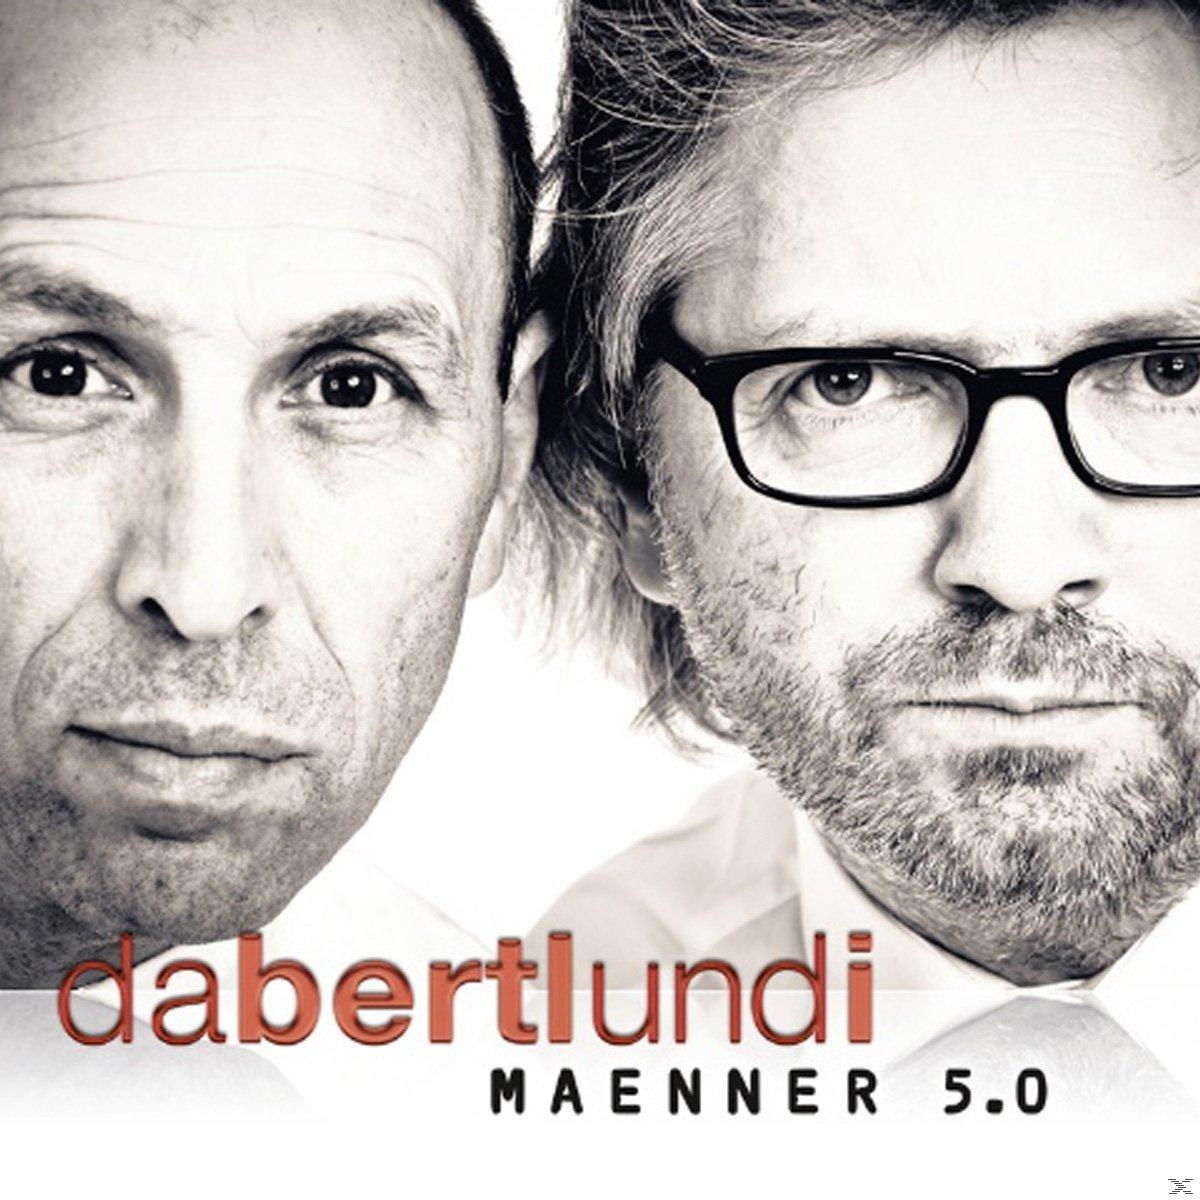 Da Bertl Und - - I (CD) Männer 5.0